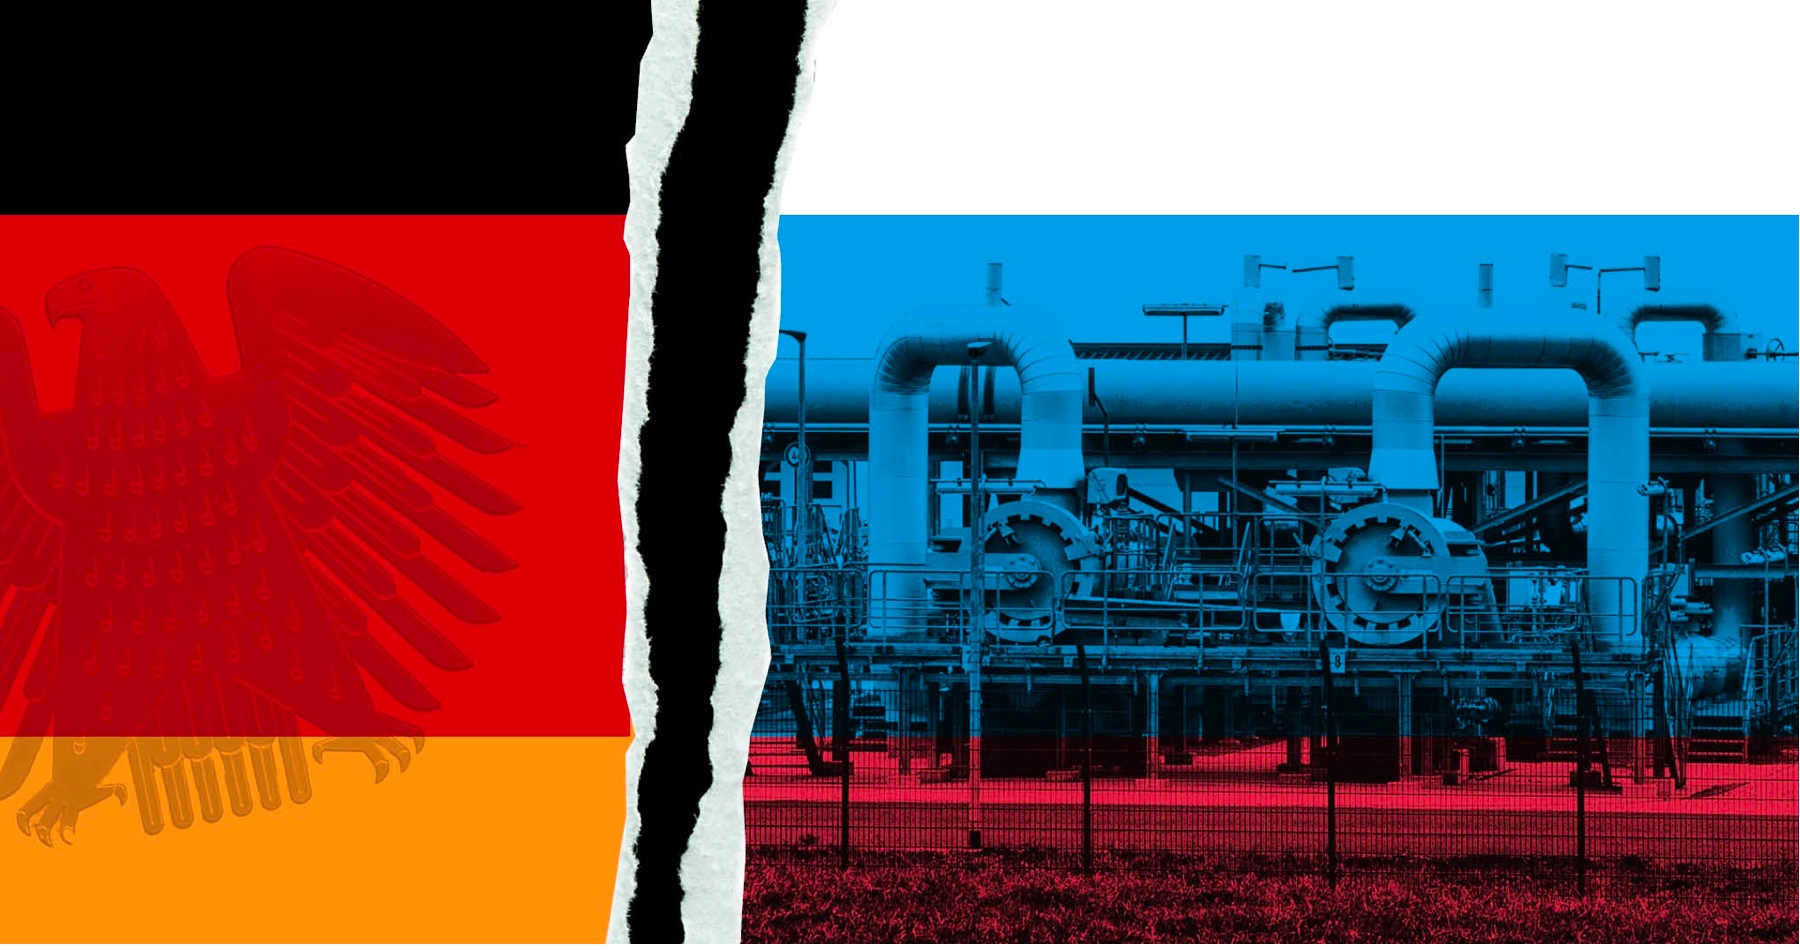 Nemecko je v extrémne napätej energetickej situácii. „V zime nám hrozí nedostatok plynu,“ varuje nemecký minister hospodárstva Habeck